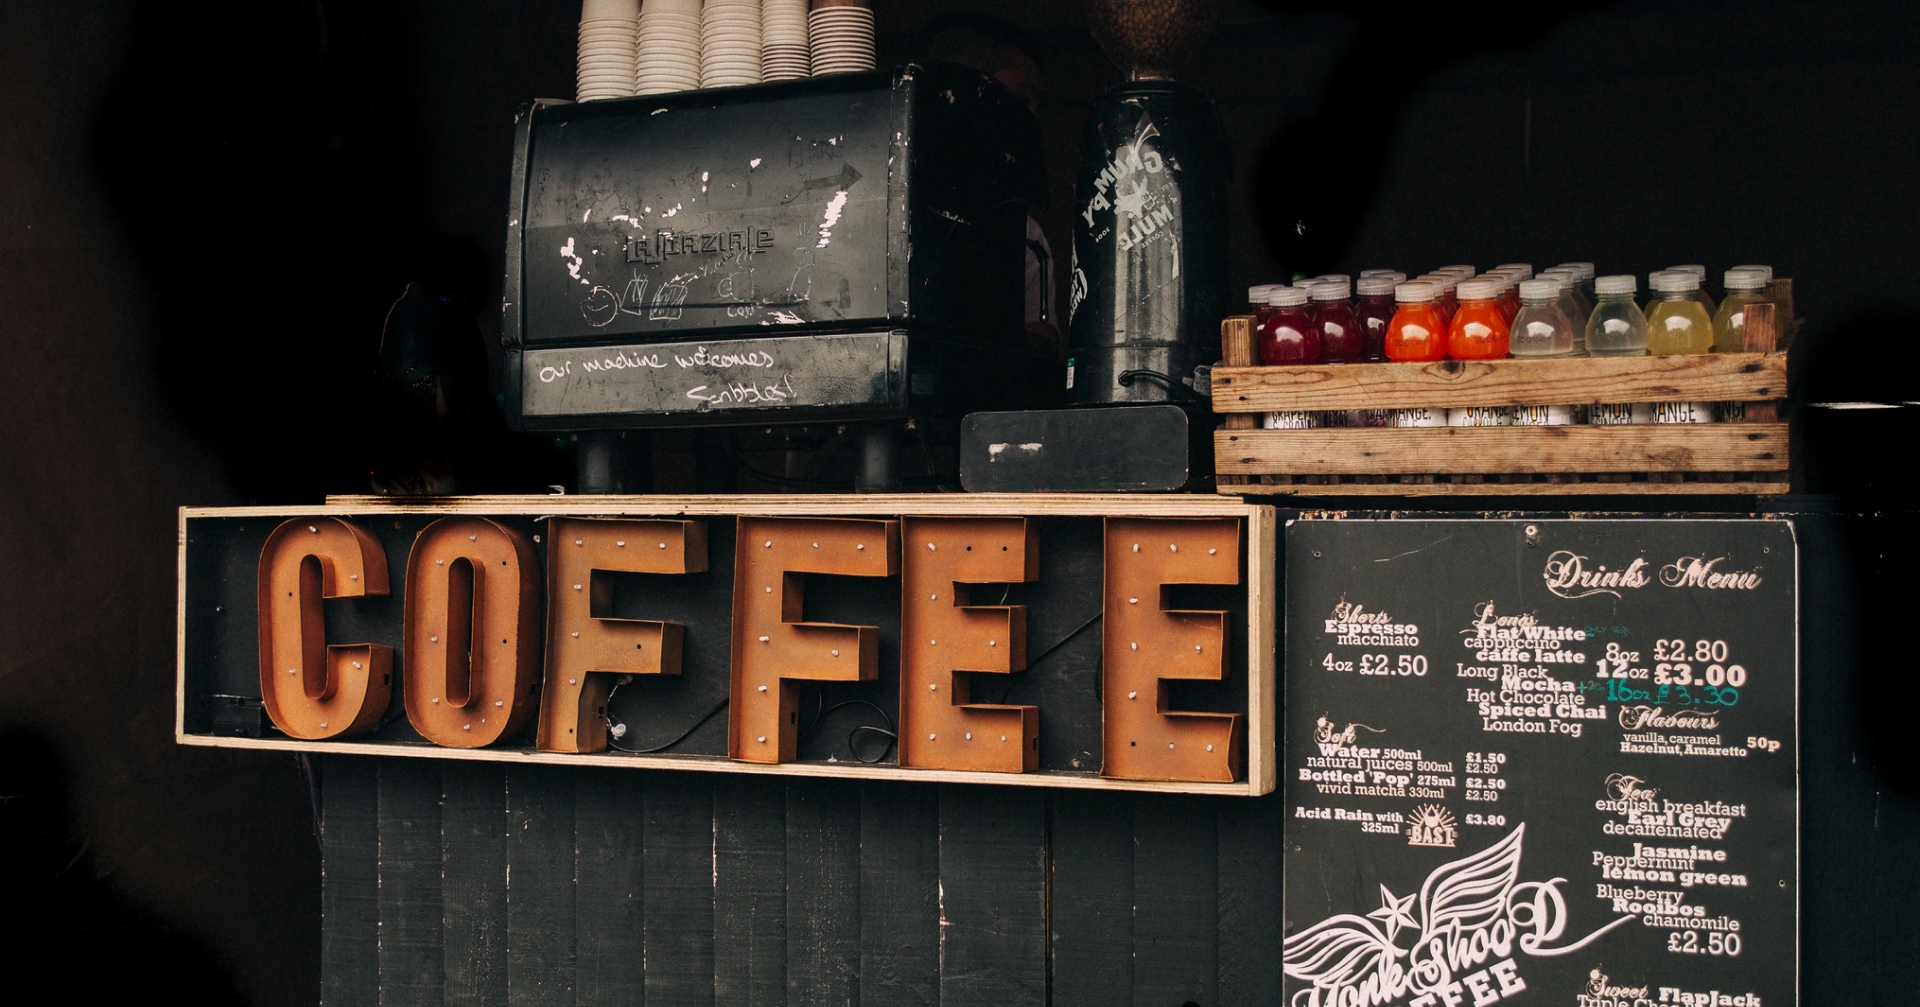 I coffee shop australiani: stile hipster, su quattro ruote e miscele pregiate